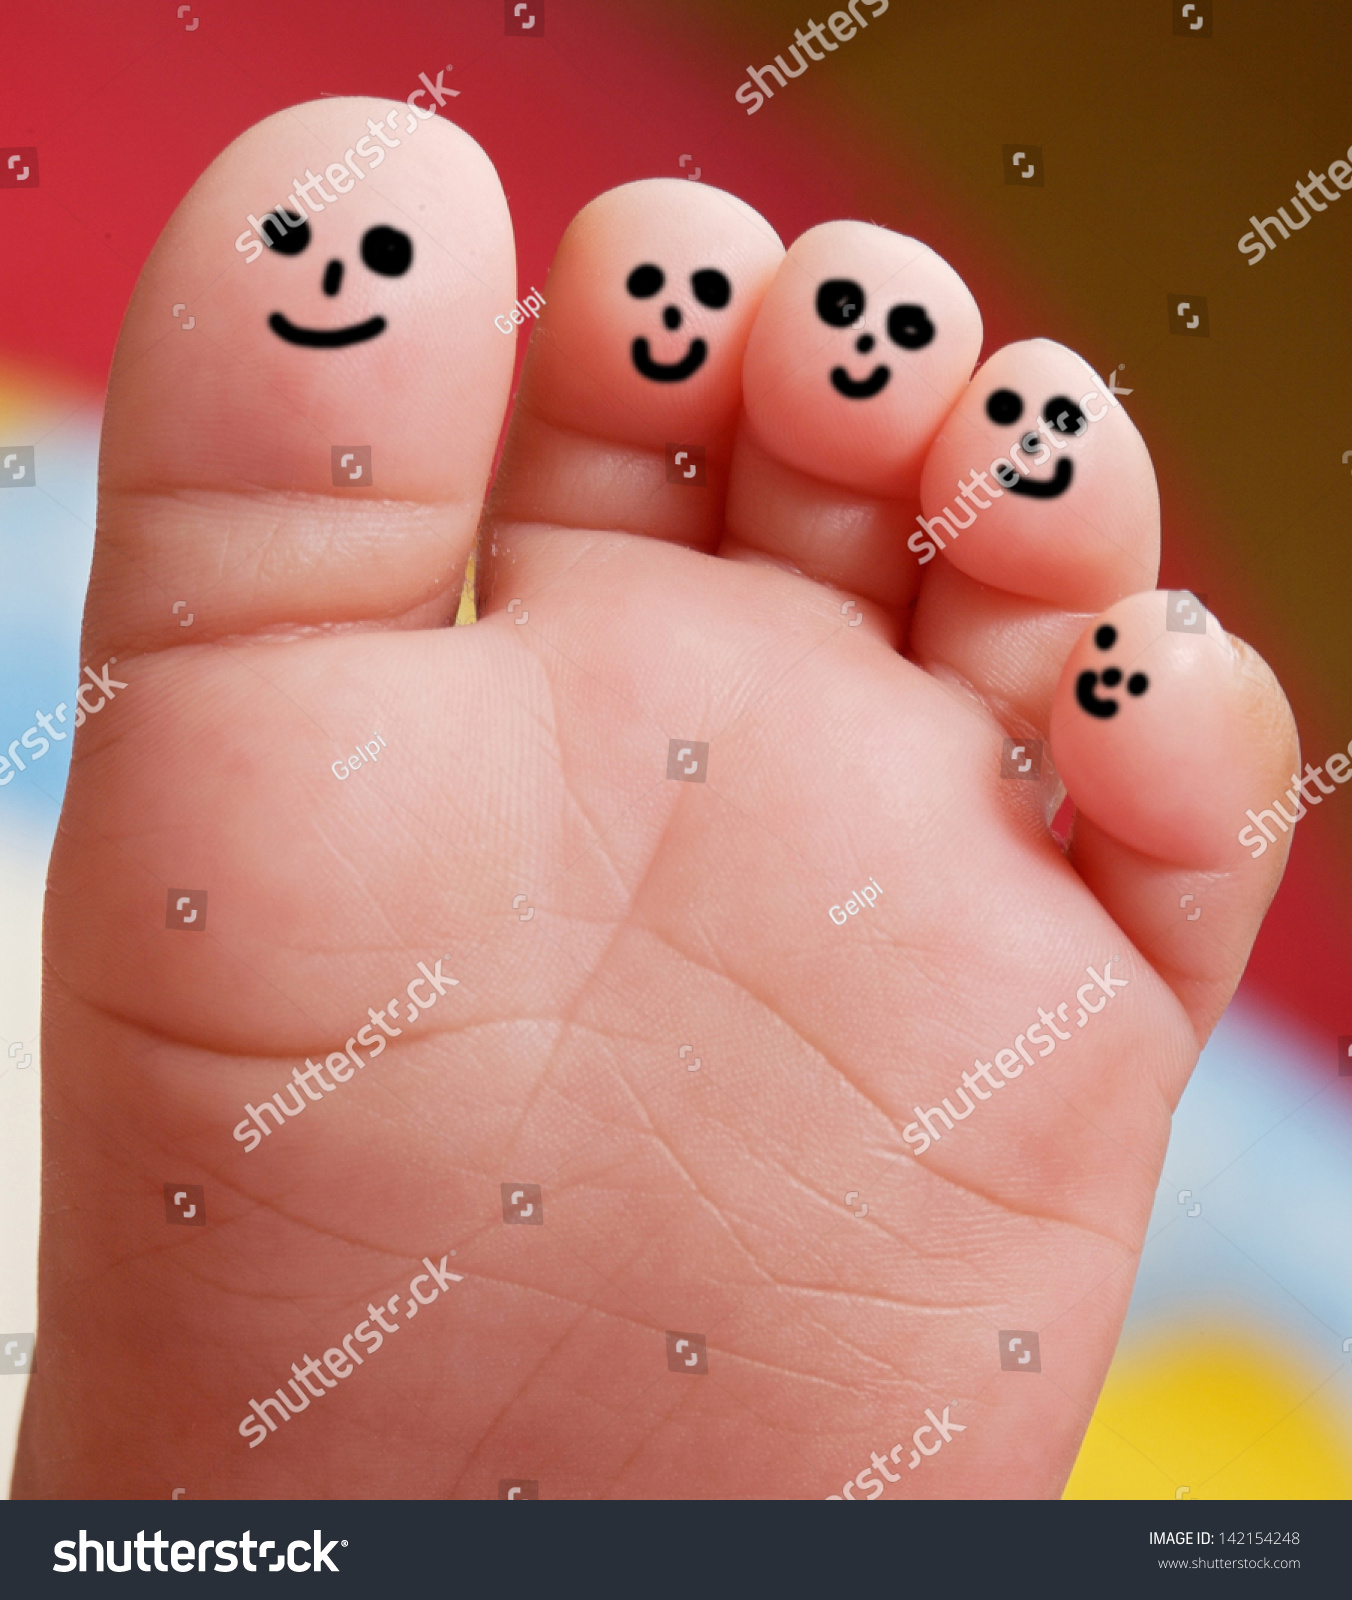 漂亮的婴儿用笑脸彩绘的脚趾